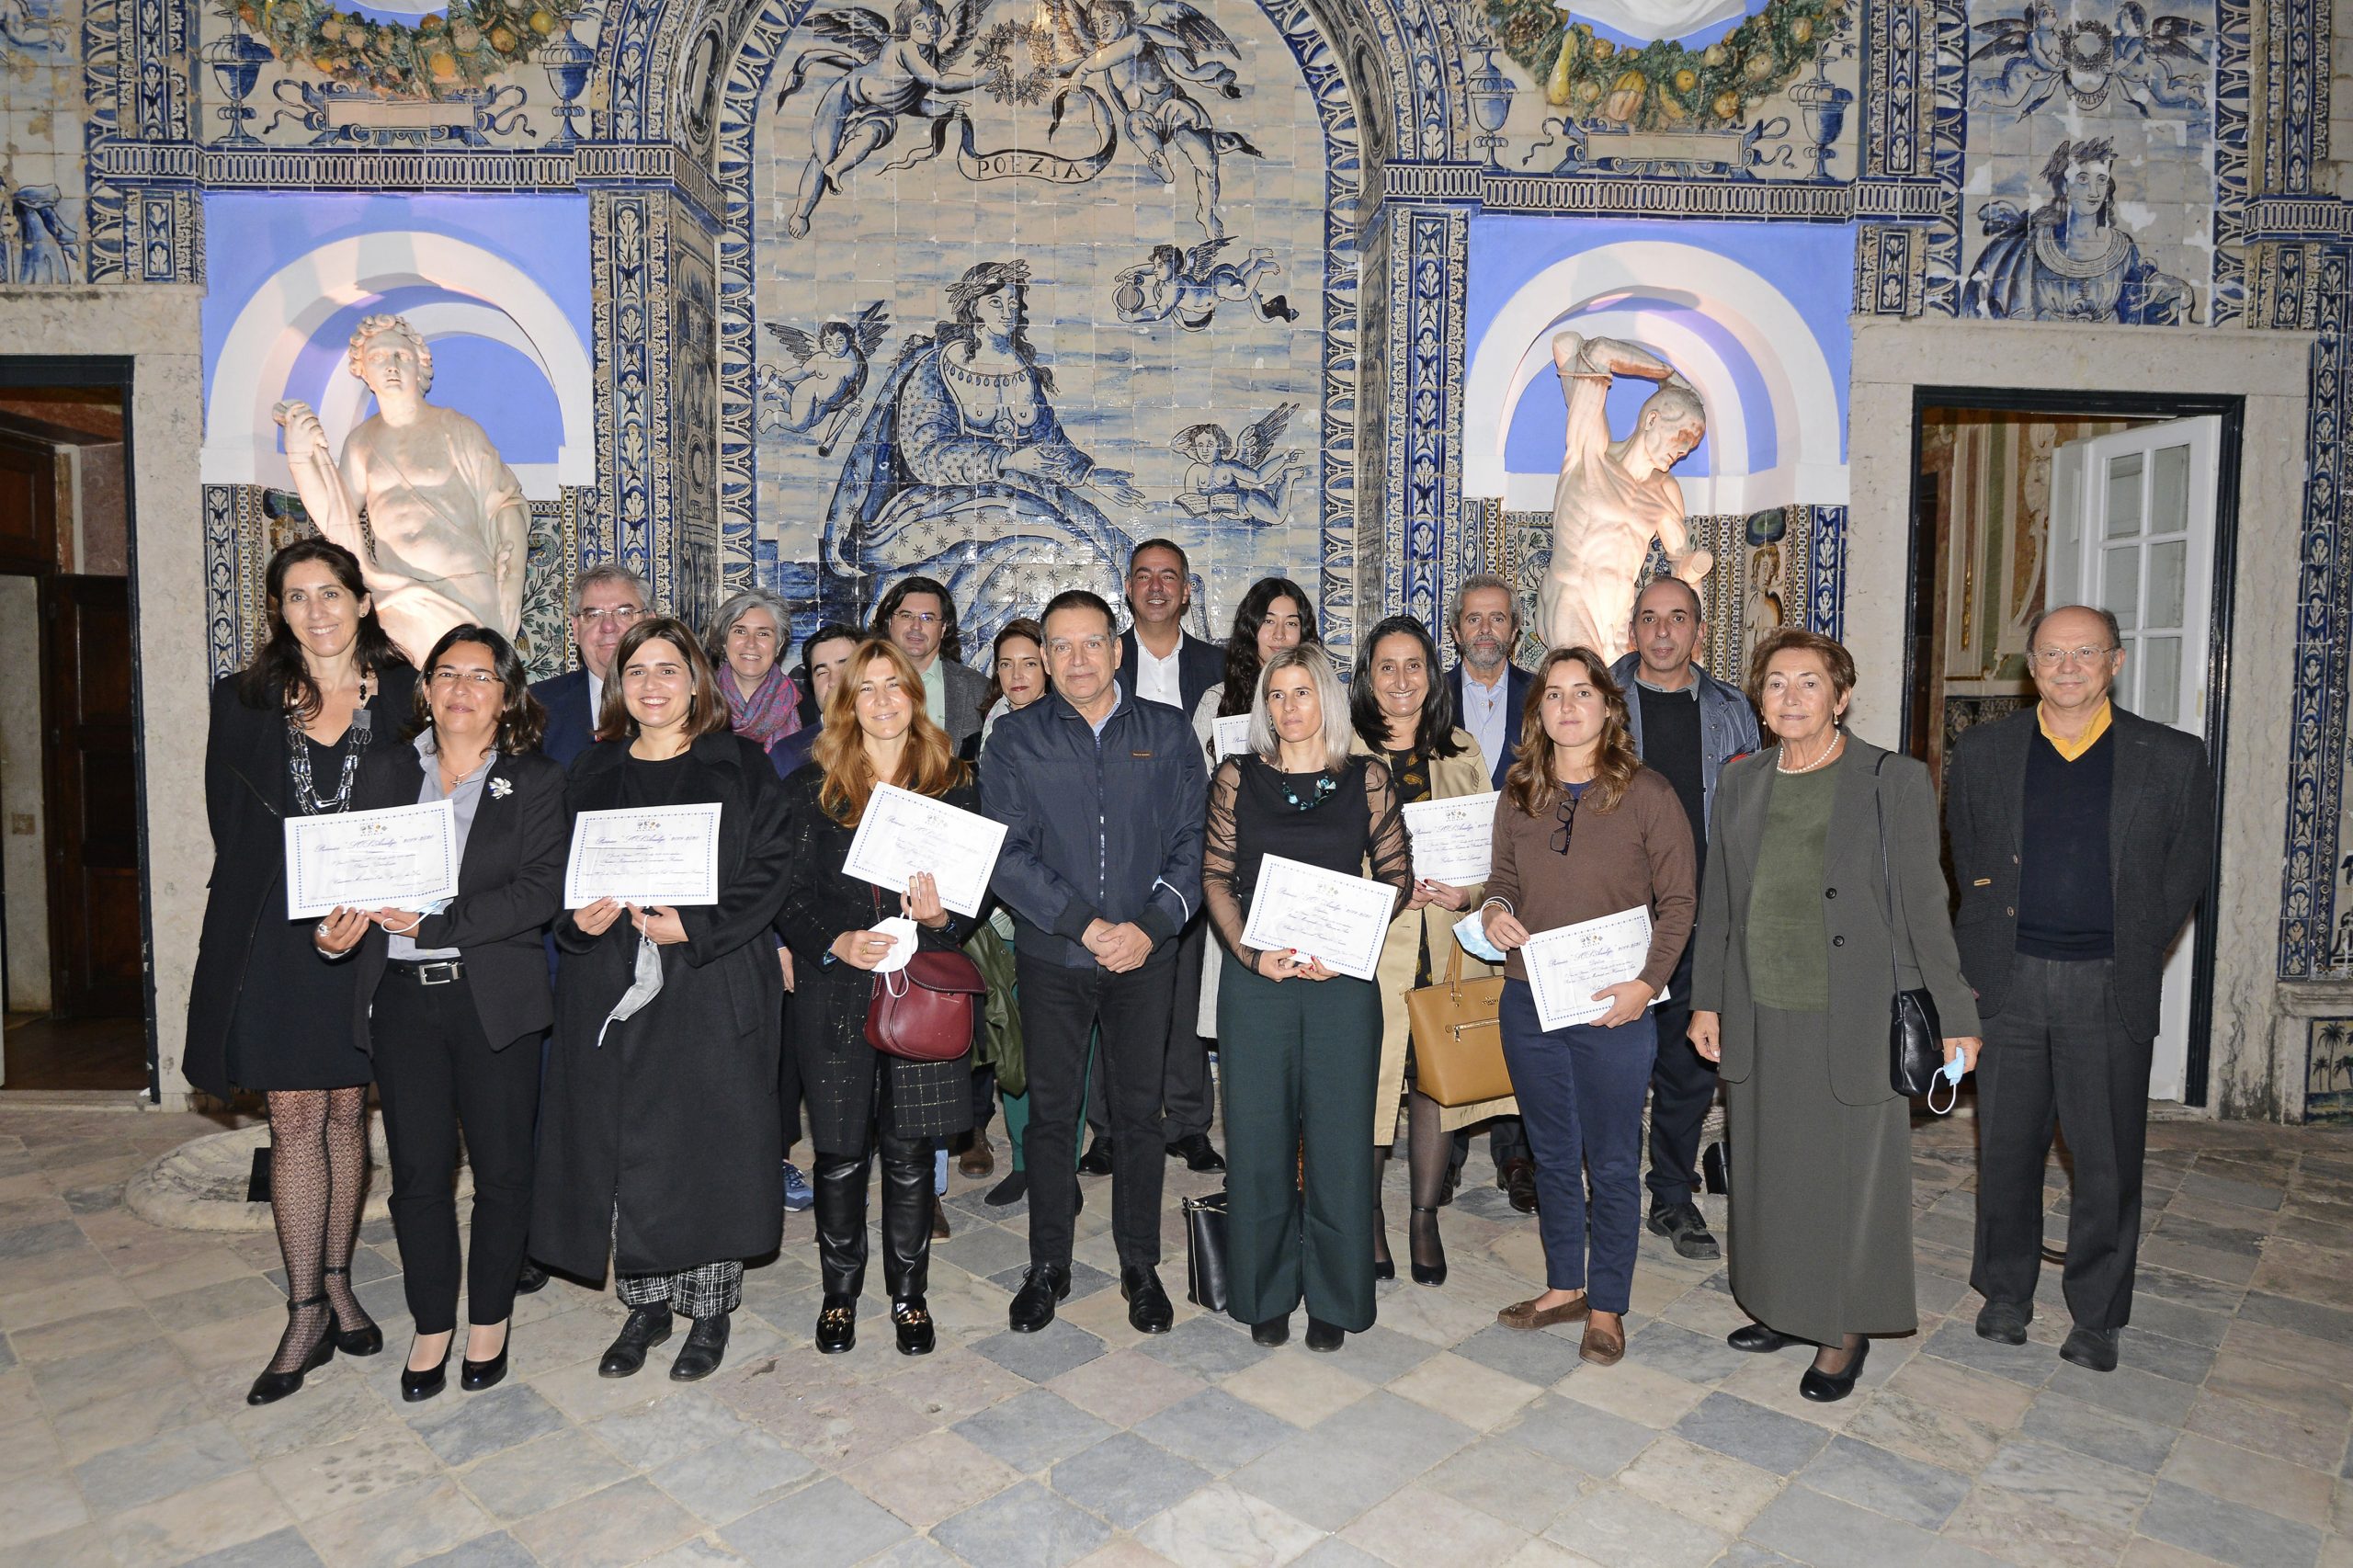 Foto de grupo de Premiados SOS Azulejo 2019-20 no dia da cerimónia de entrega dos prémios a 09.11.21, no Palácio Fronteira